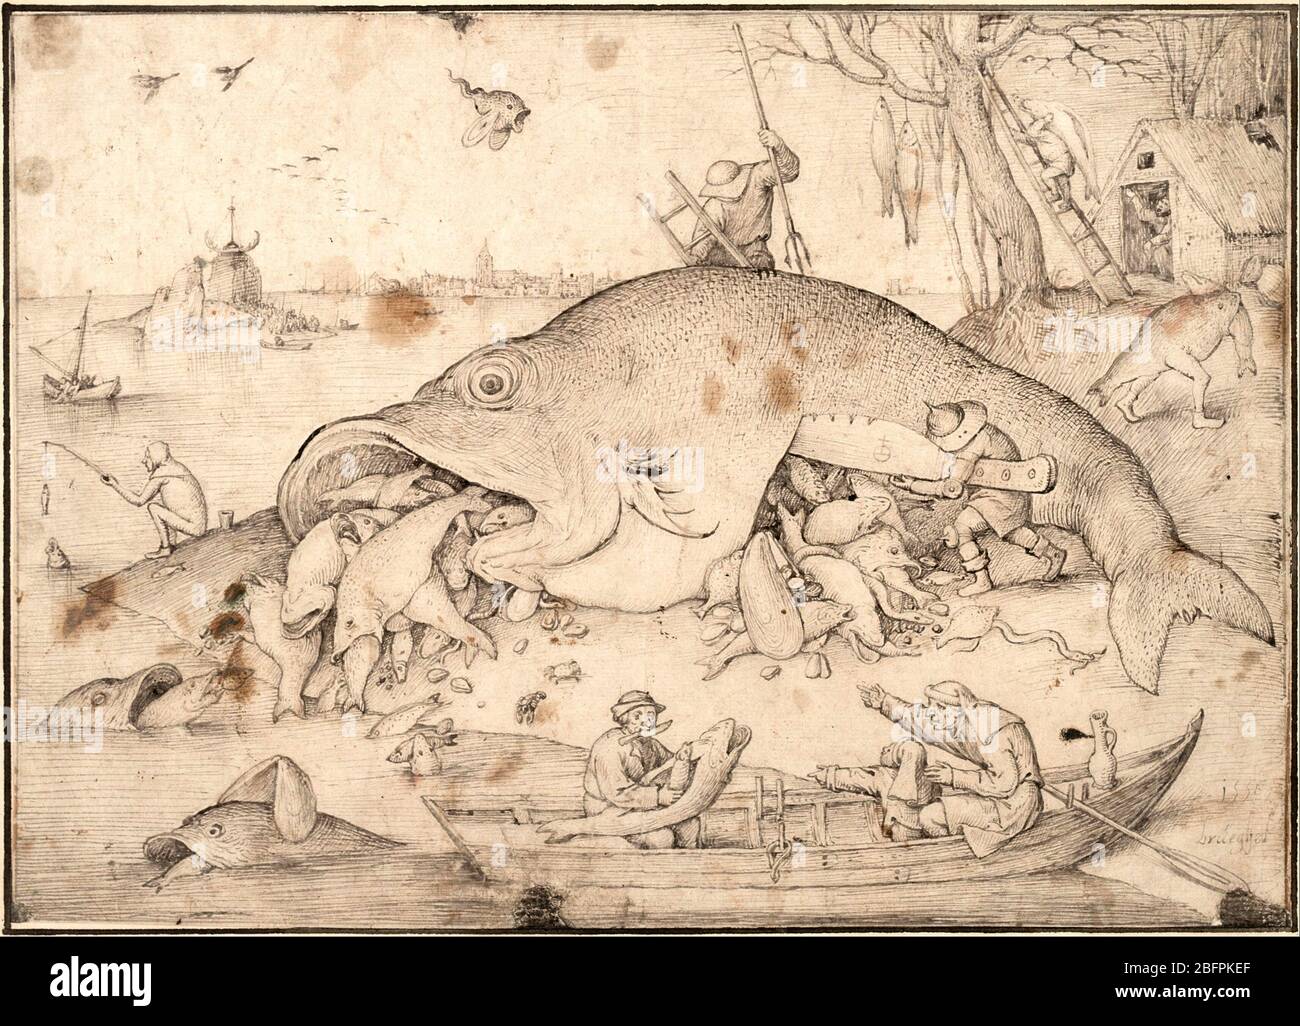 El pescado grande come el pez pequeño, dibujo de Bruegel para una impresión, 1556, por Pieter Bruegel el Viejo Foto de stock